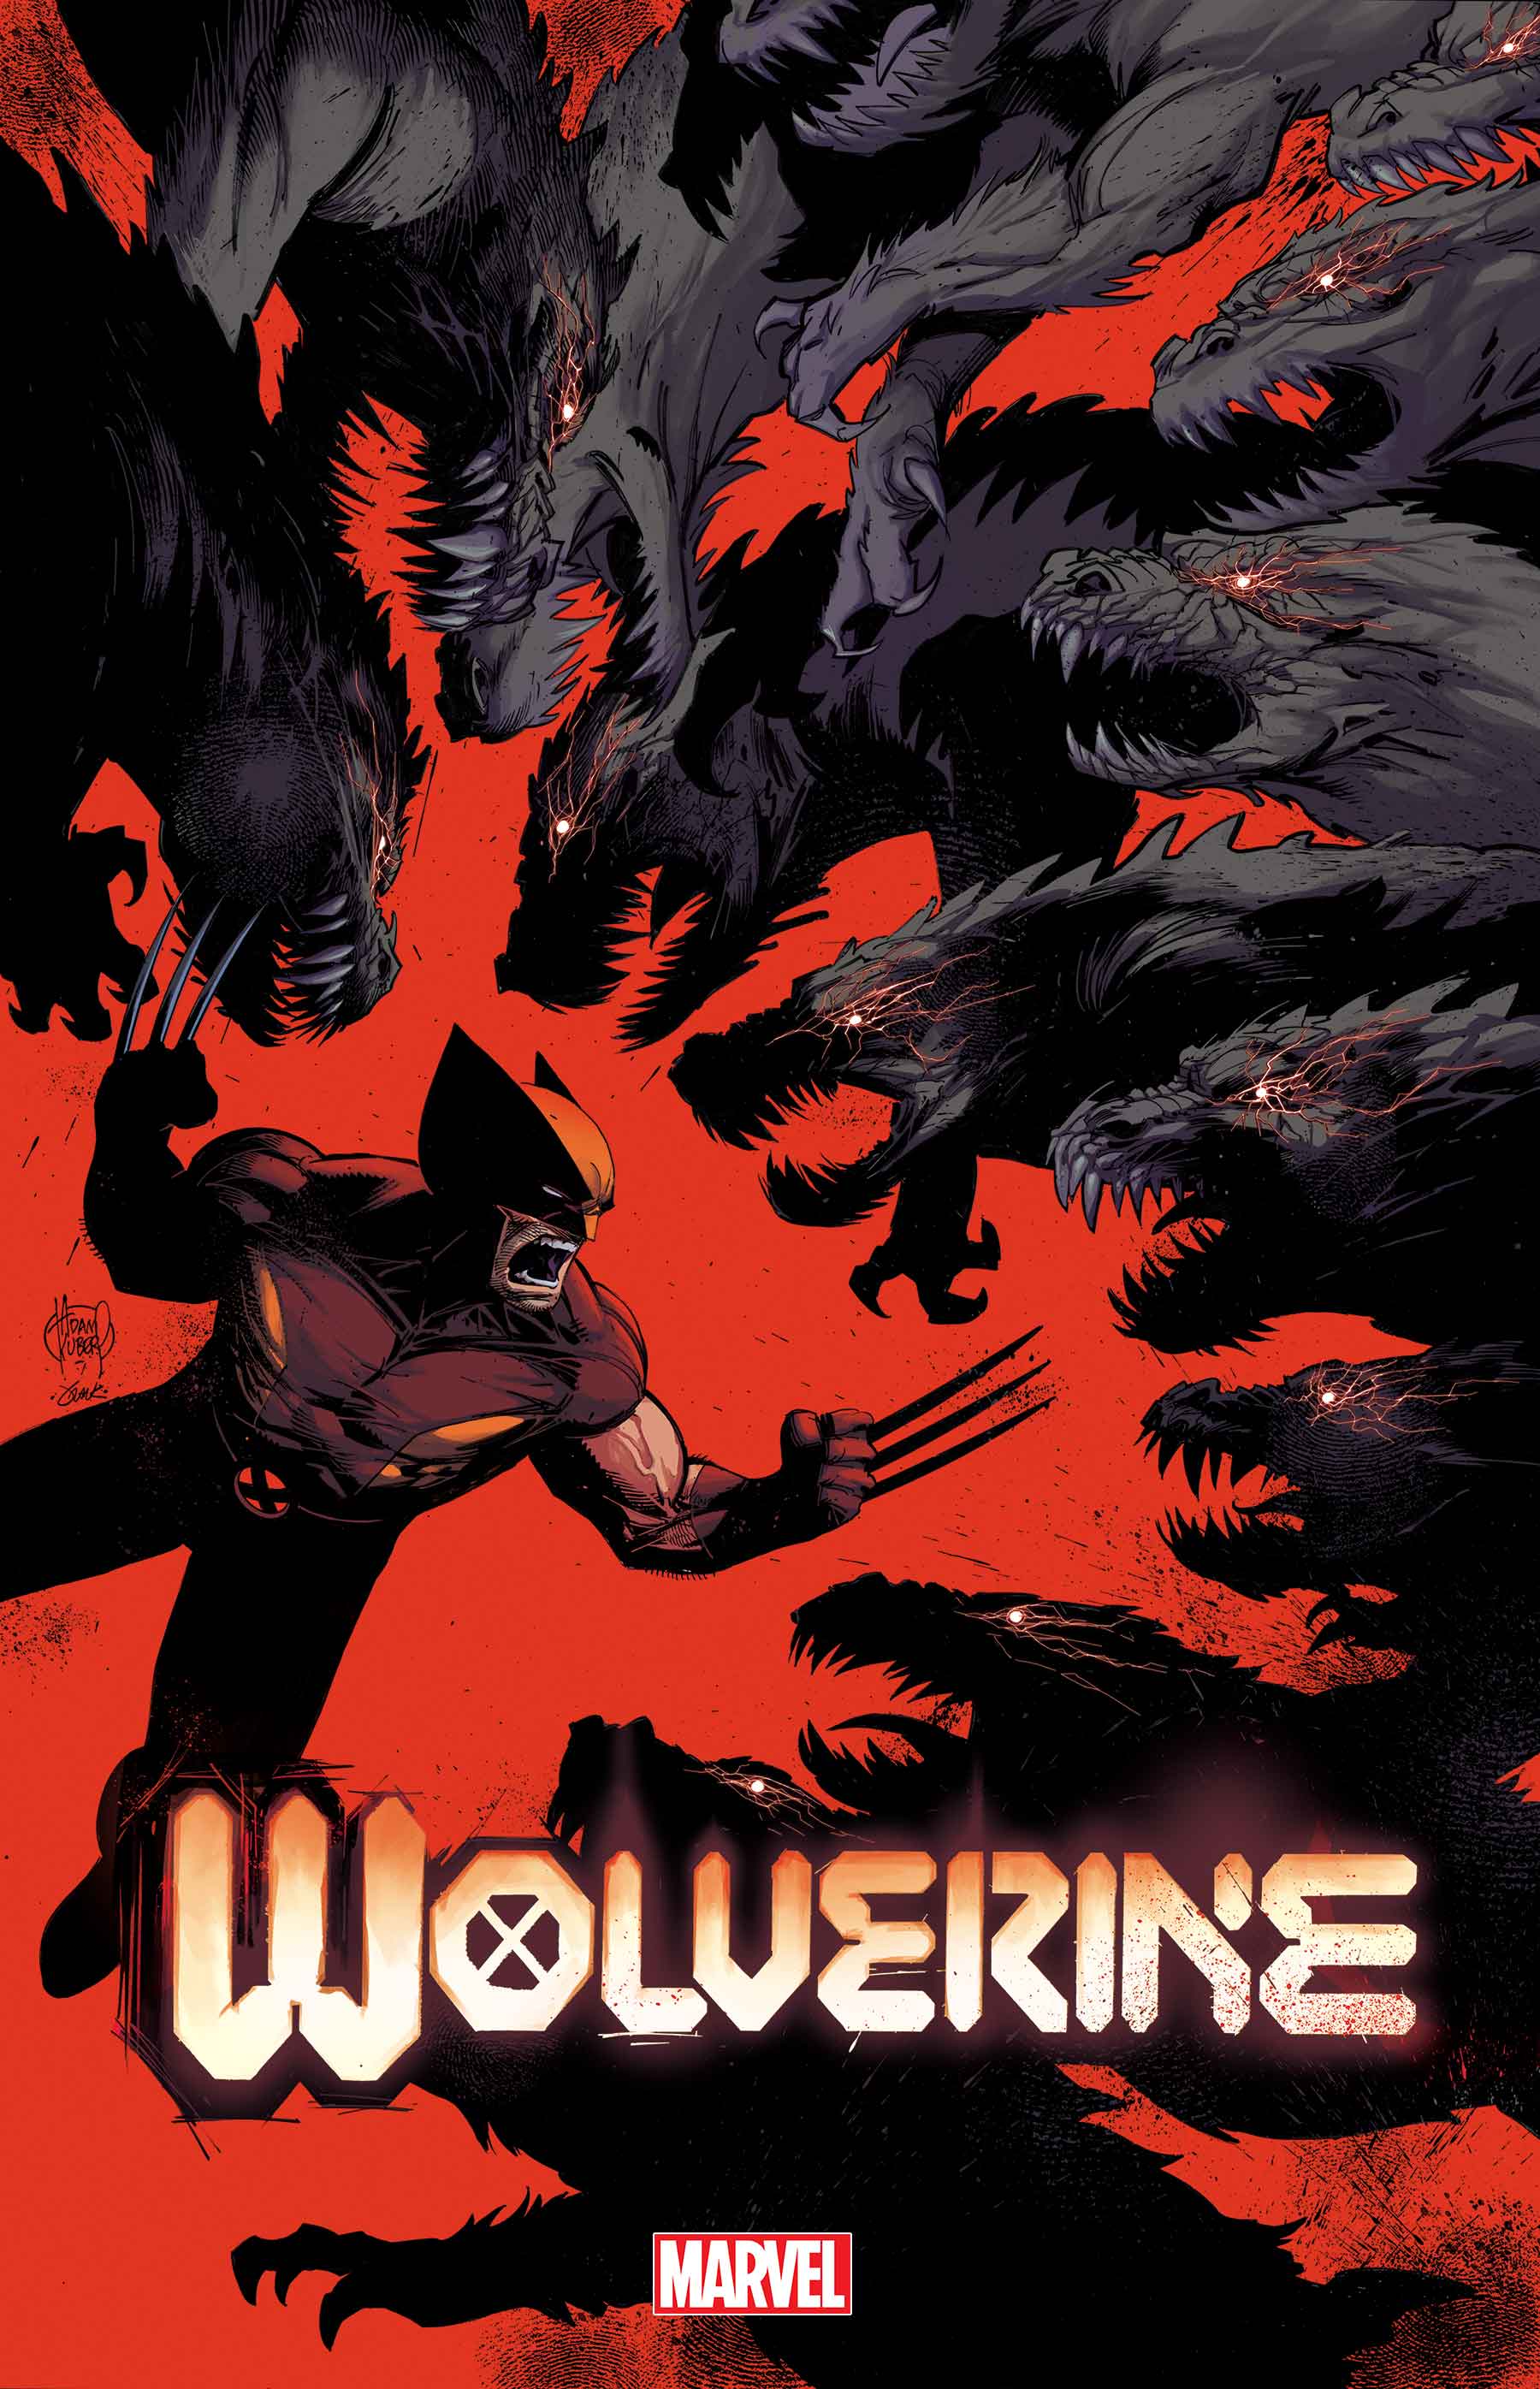 Wolverine (2020) #24